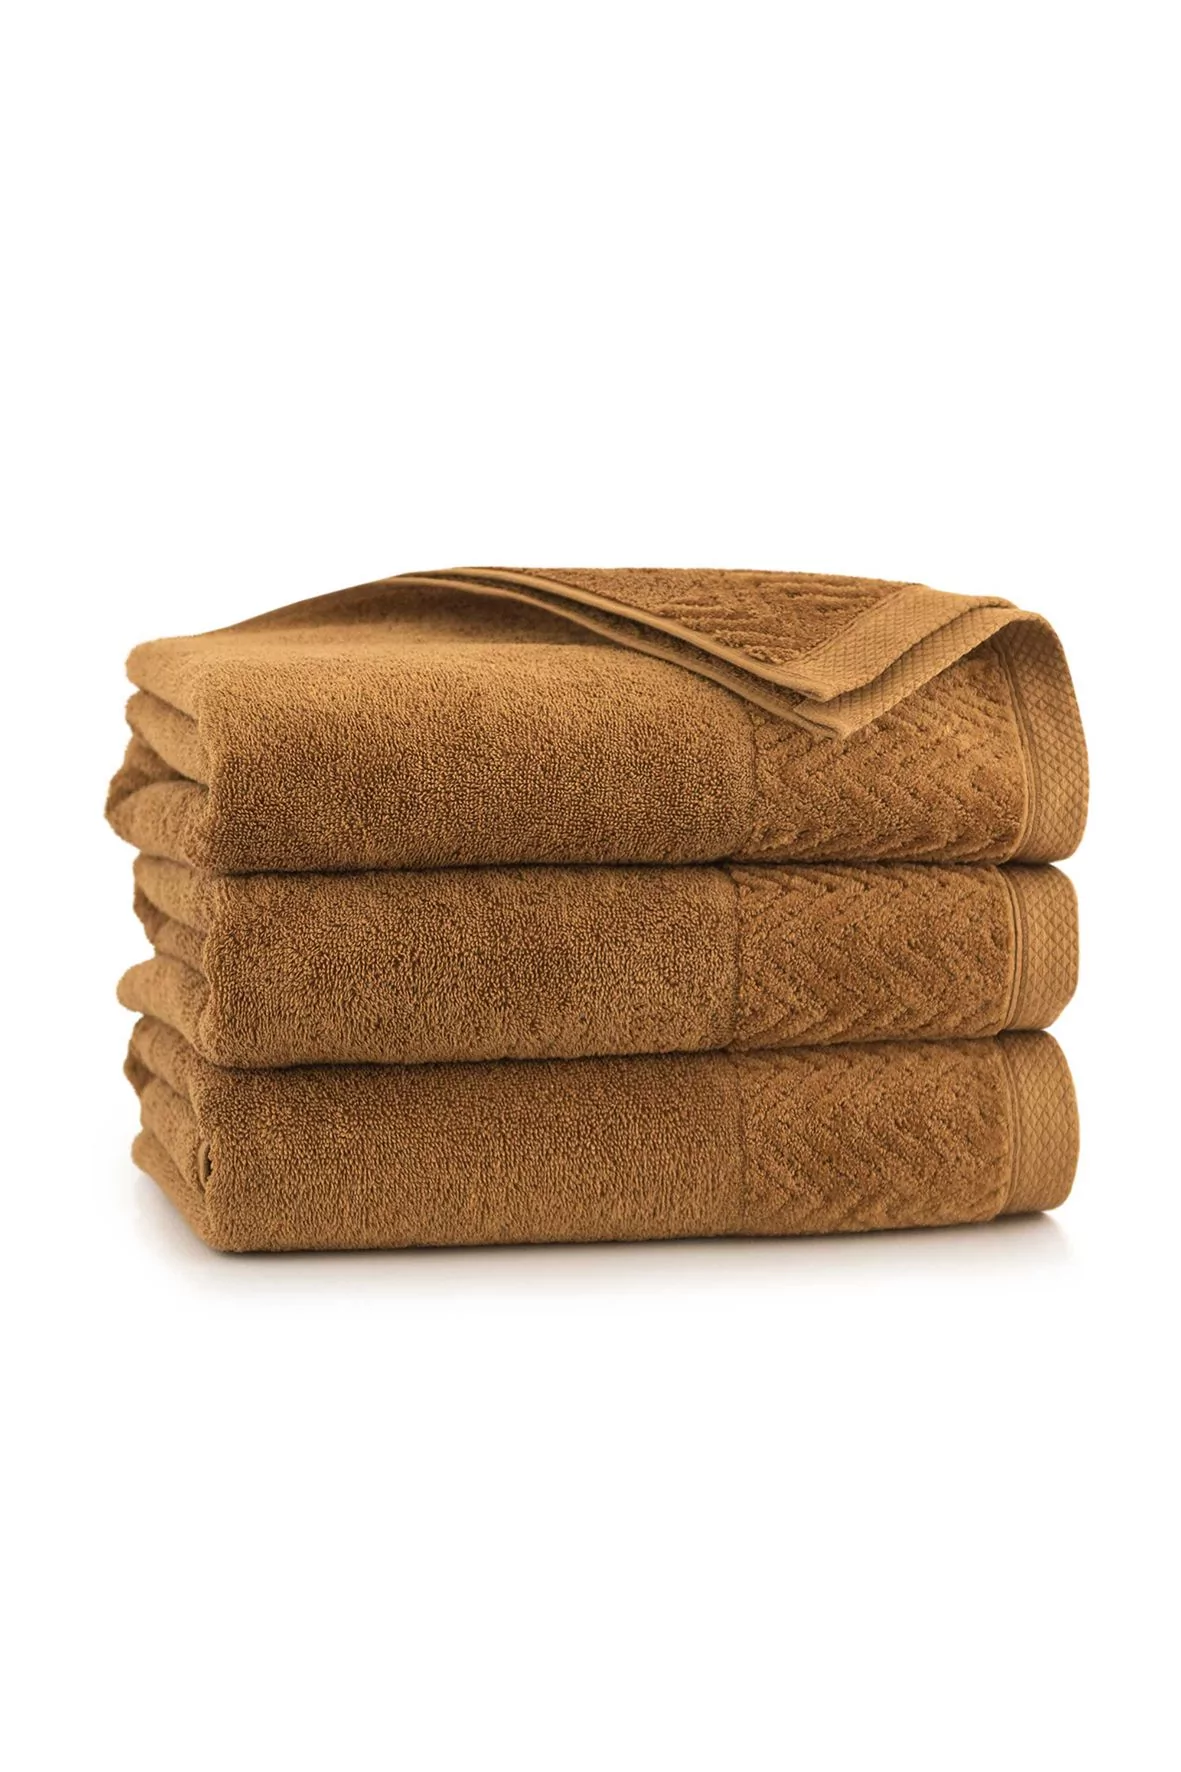 Ręcznik Toscana z bawełny egipskiej migdałowy 70x140cm